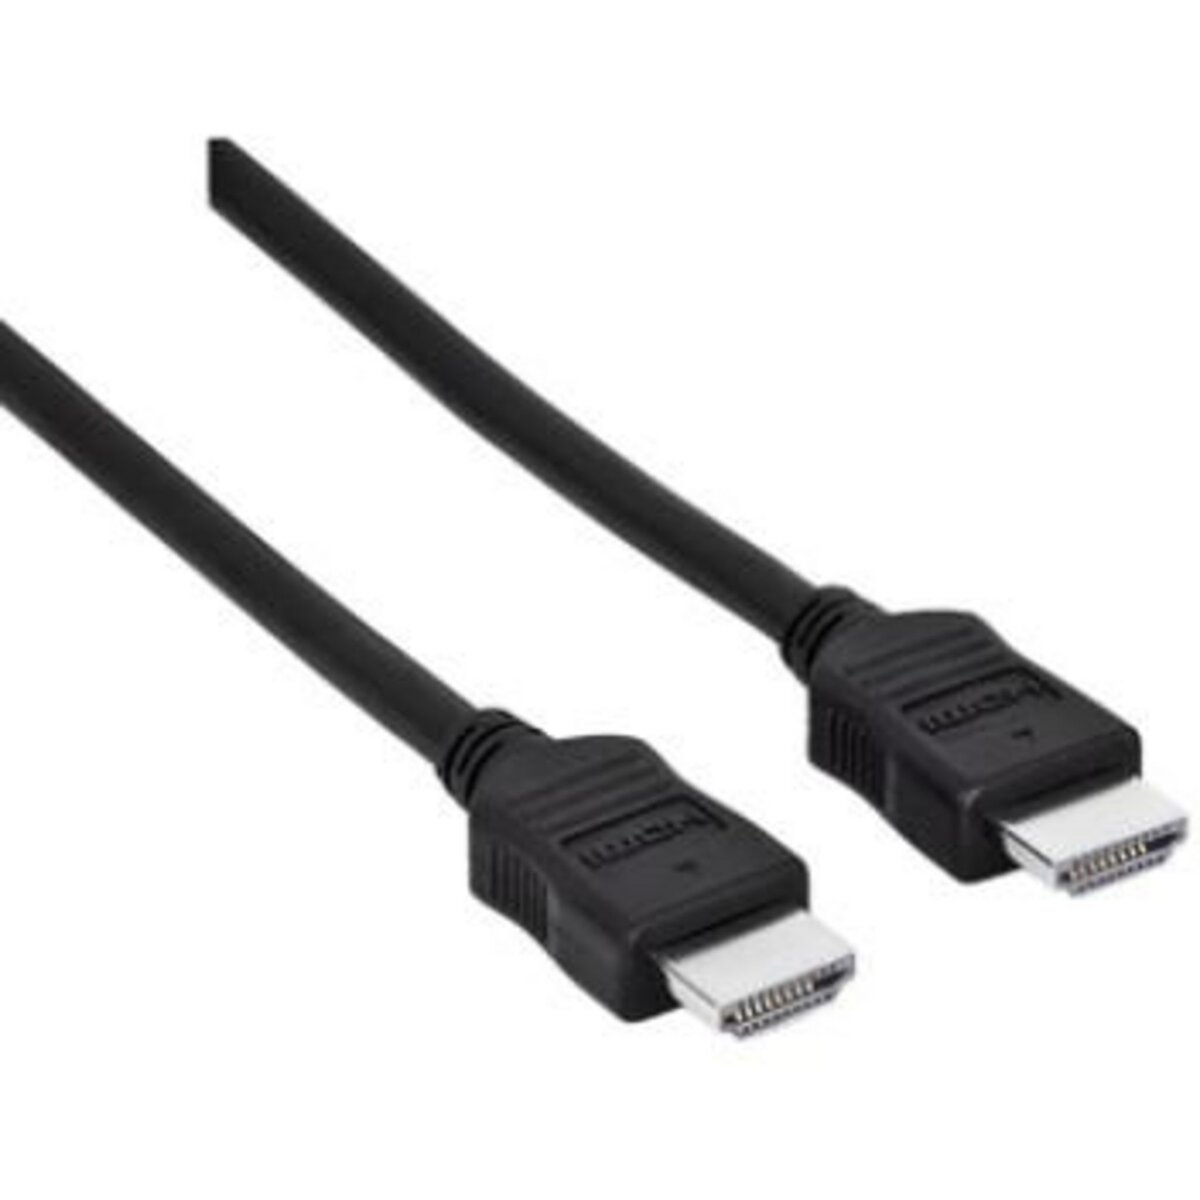 generique cable G1115101 Câble HDMI